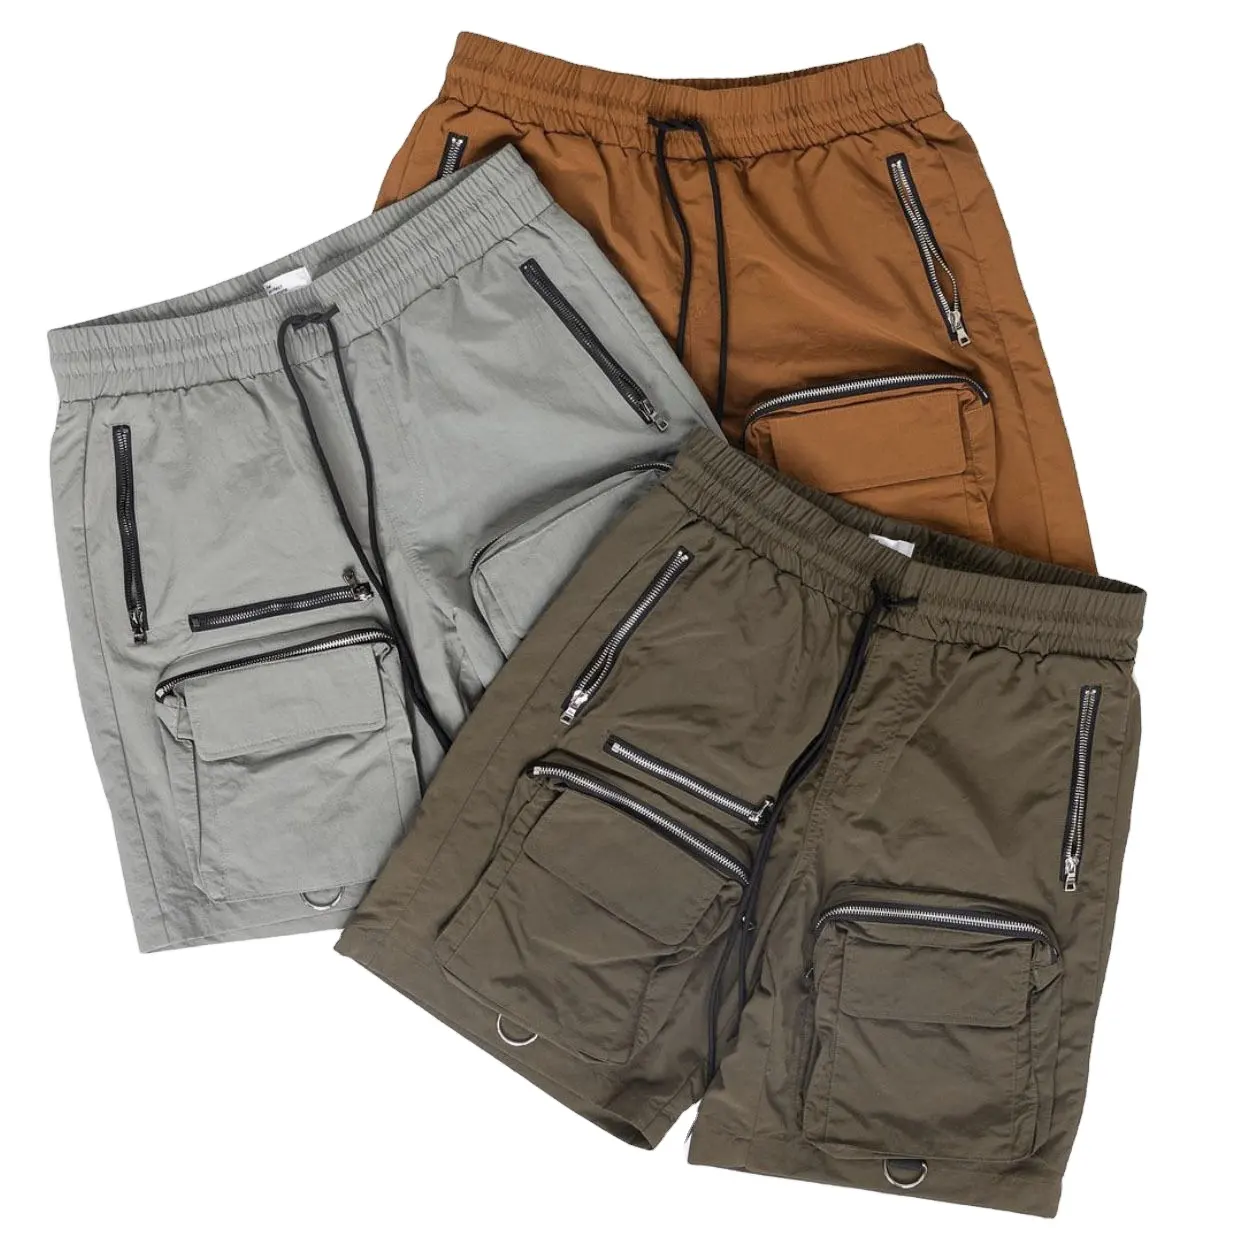 Roupas regulares Shorts Cargo com contraste estampado Legging interno simples e decente para homens para vender adultos